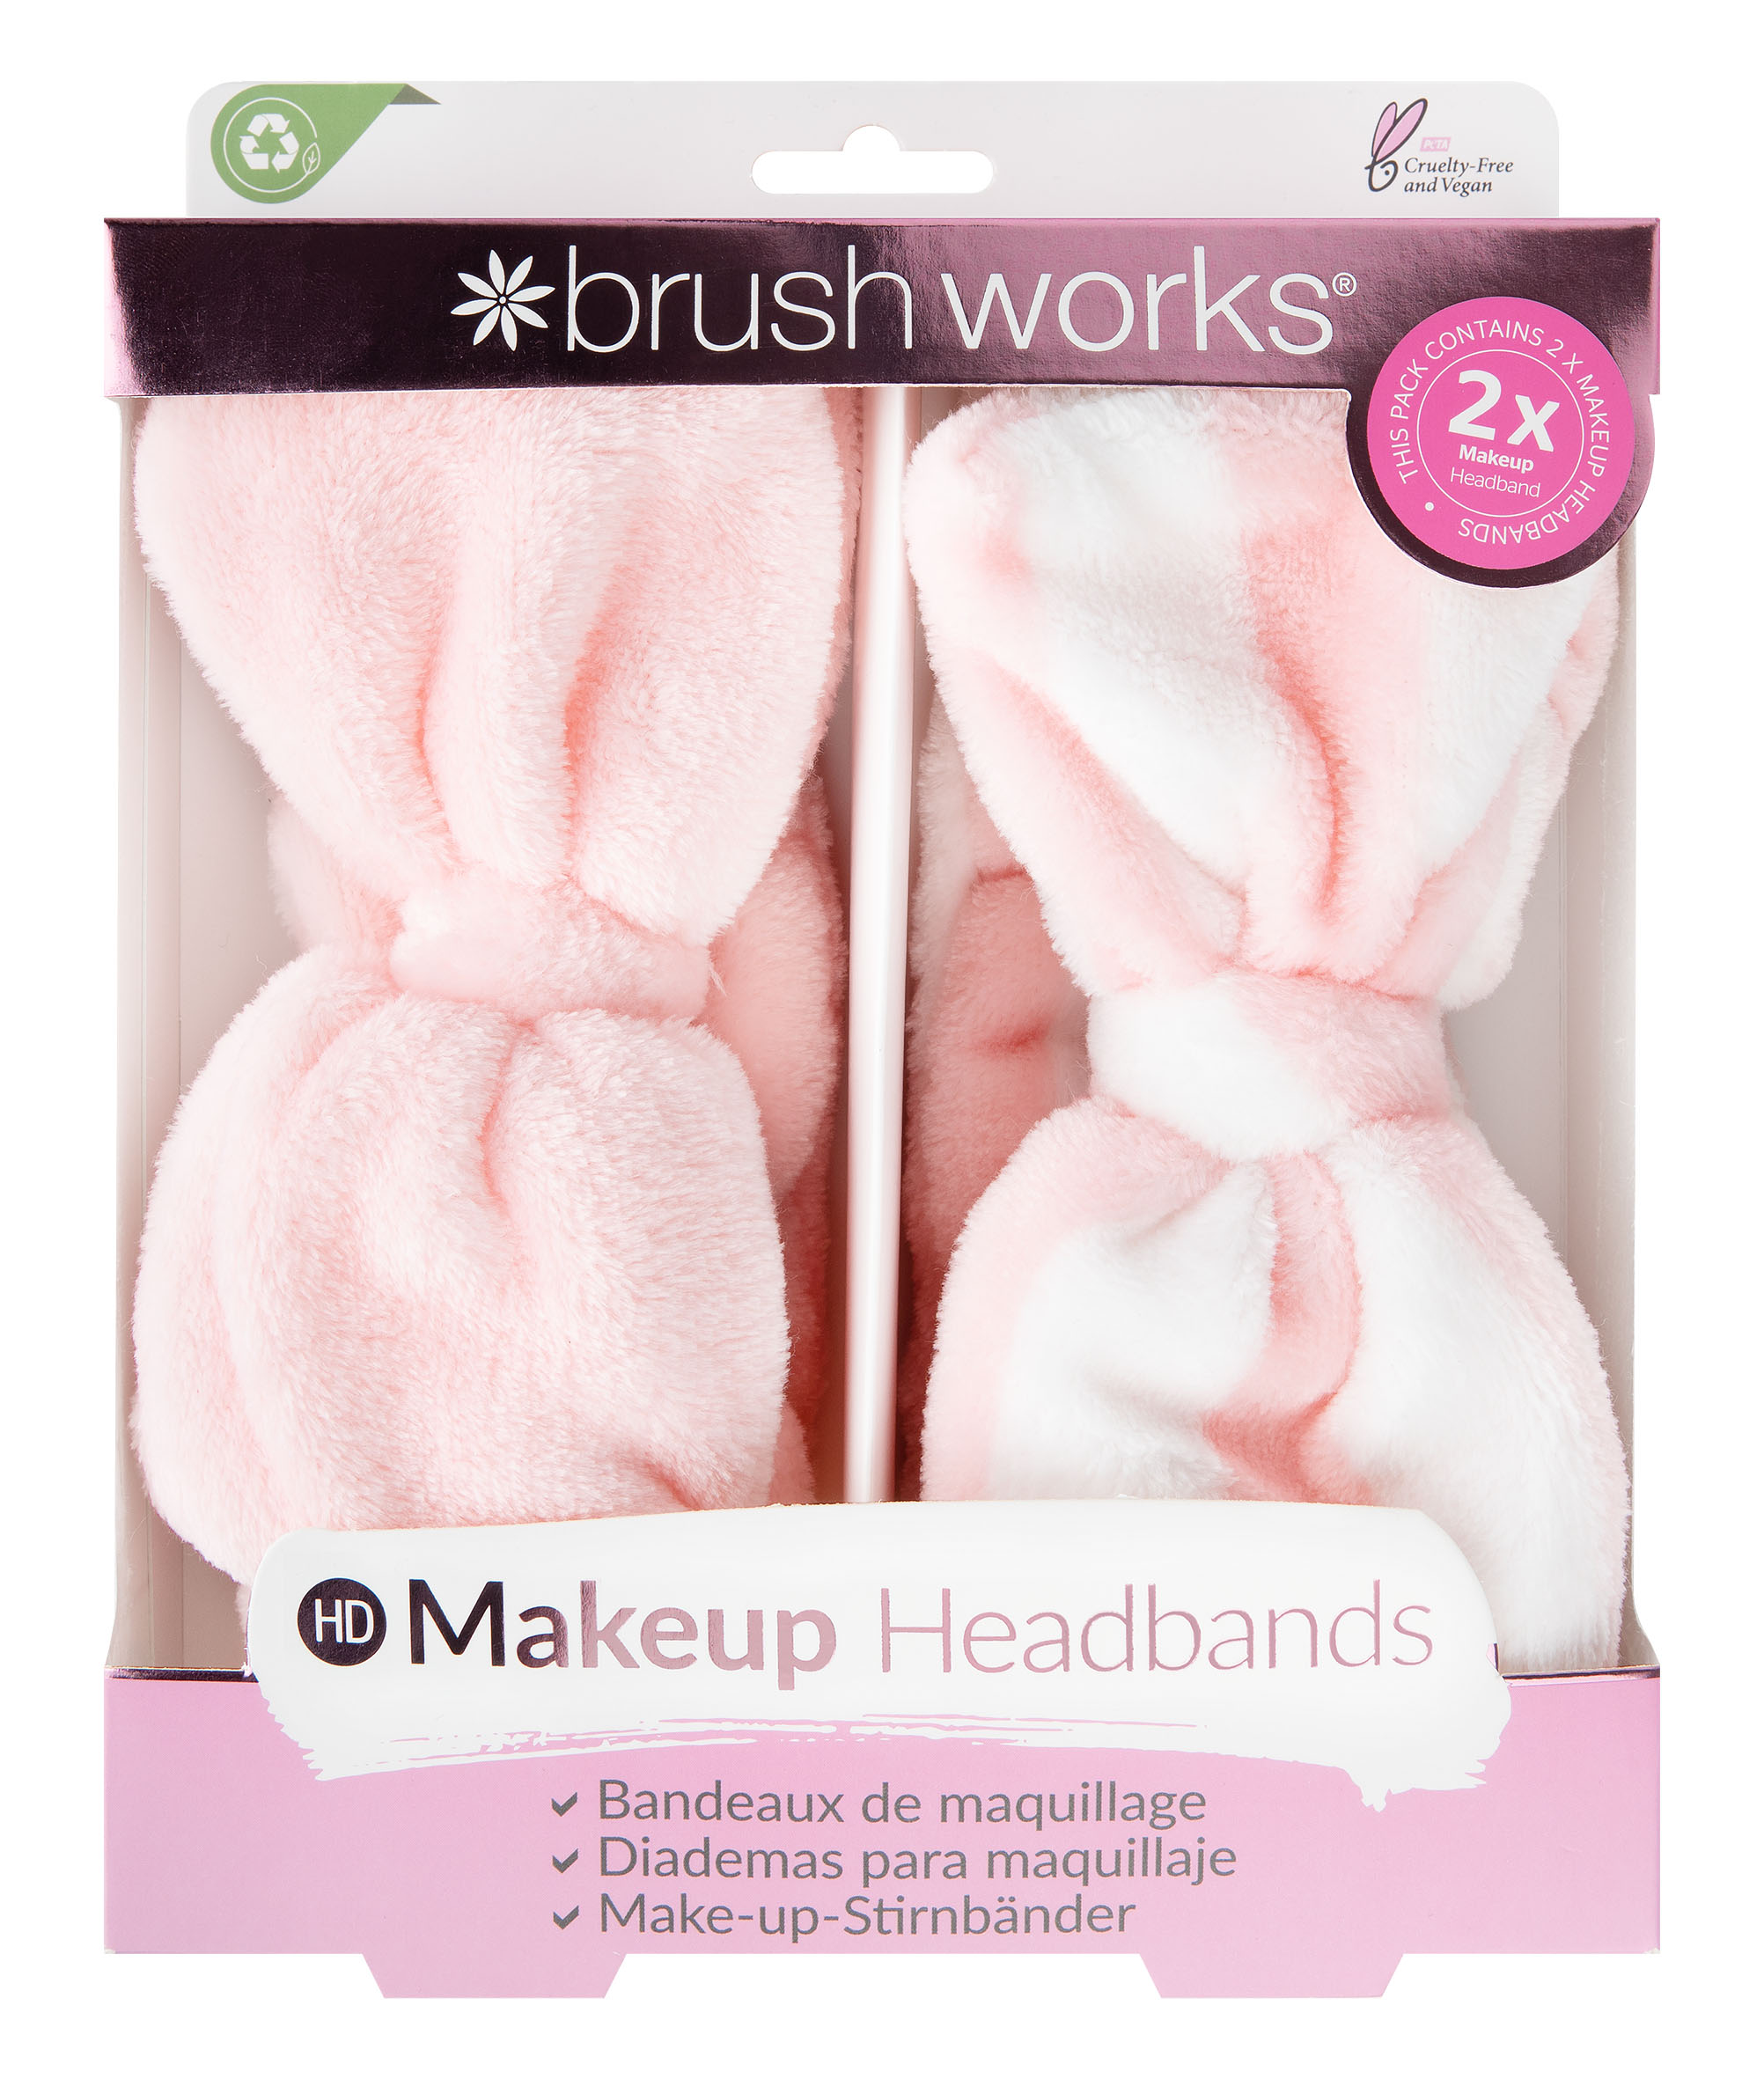 Brushworks Makeup Headbands, 2 stk.